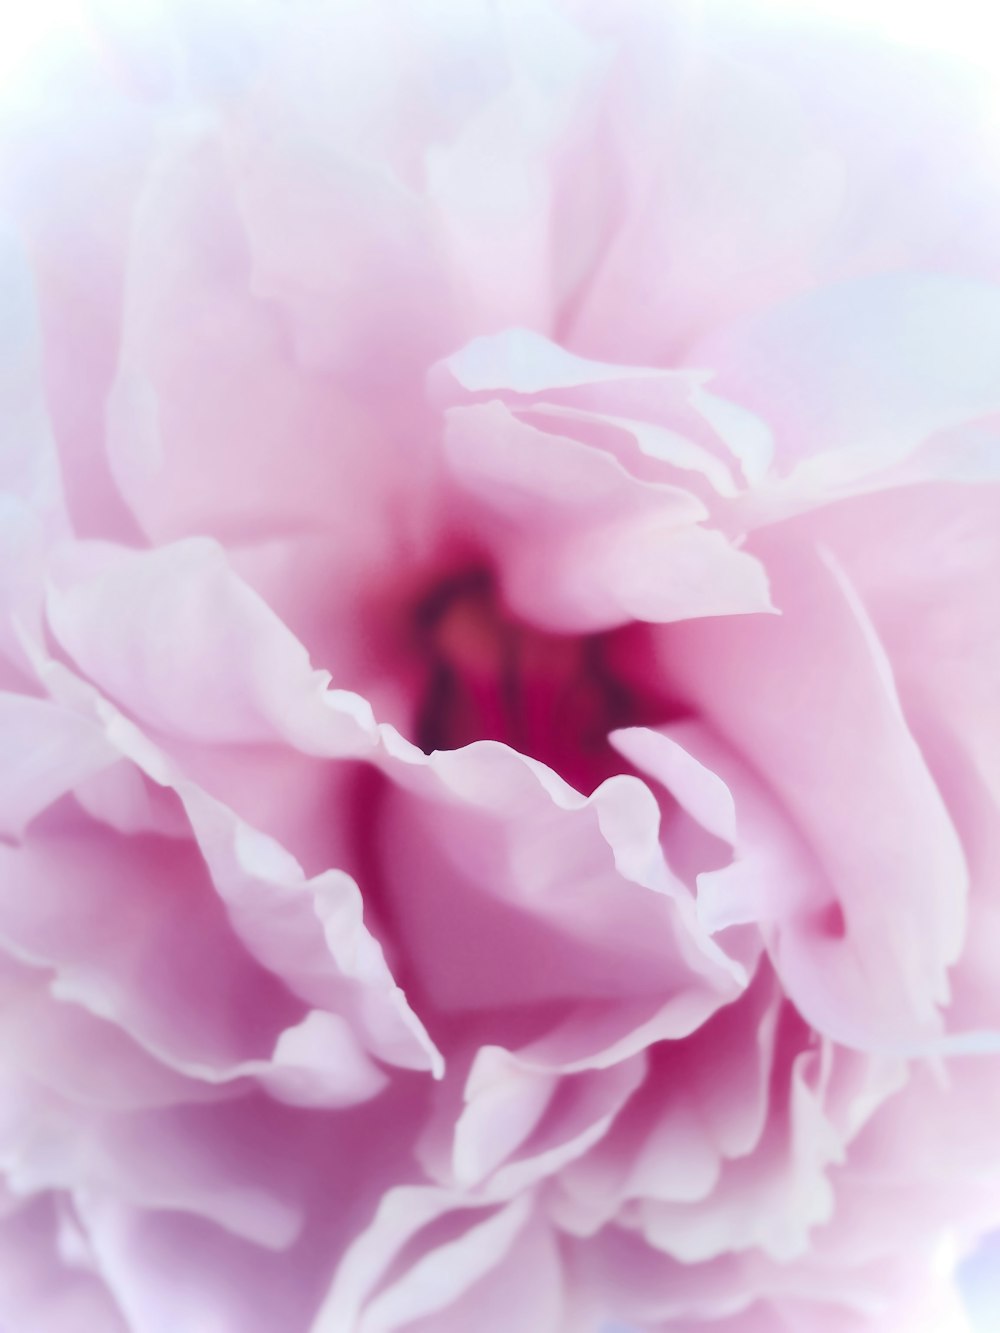 um close up de uma flor rosa em um fundo branco